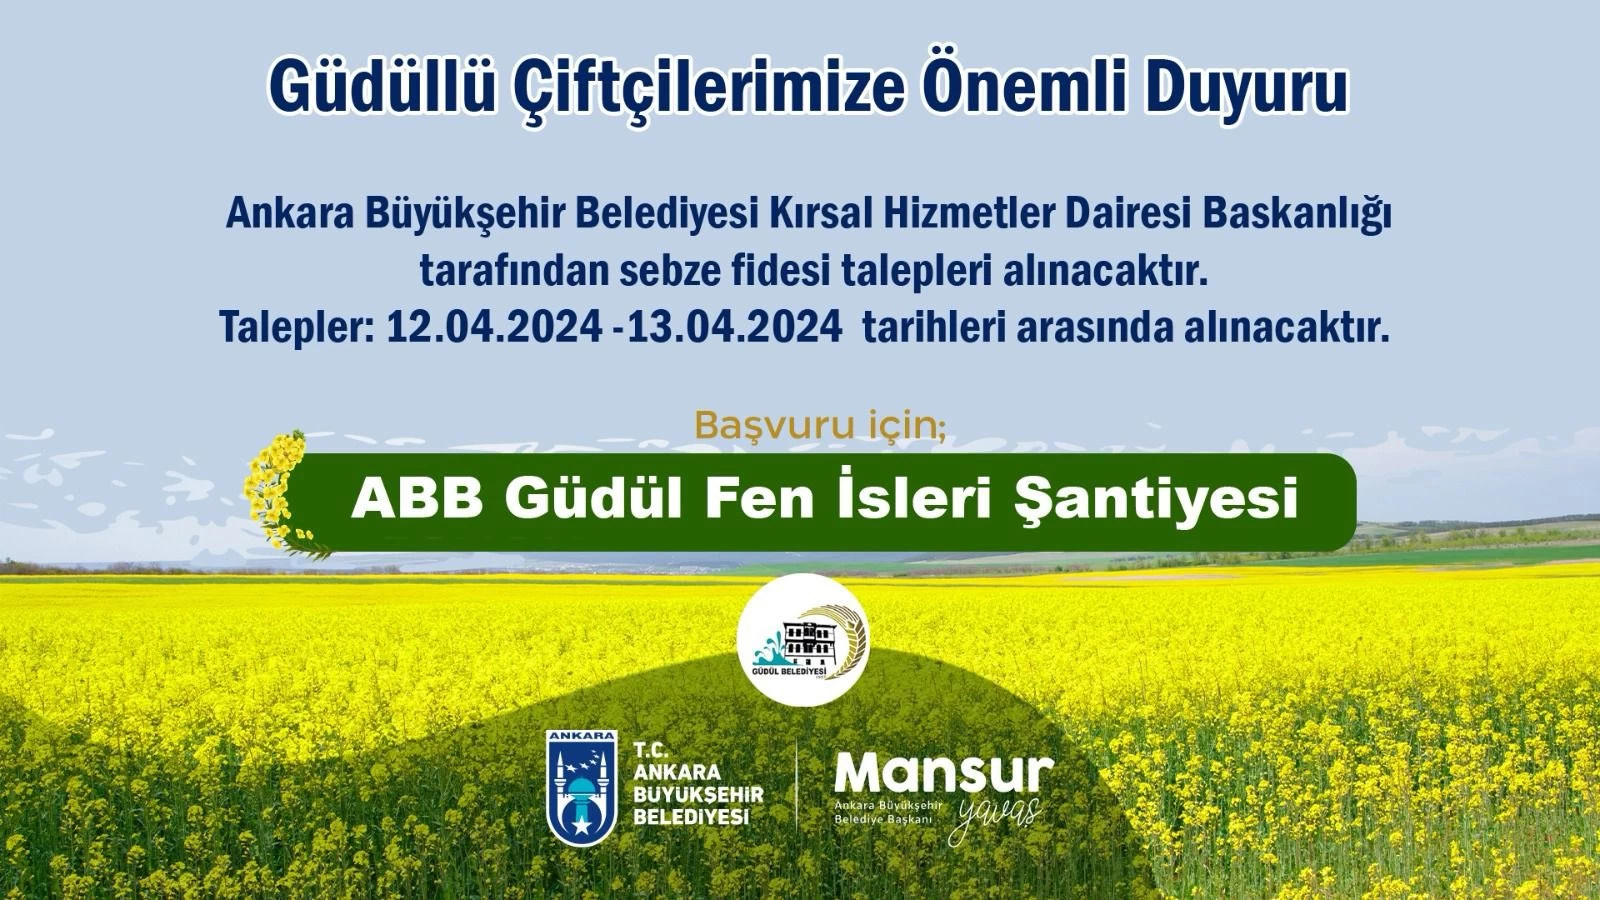 Ankara'nın o ilçesinde çiftçilere destek duyurusu yapıldı! Sadece 2 gün sürecek